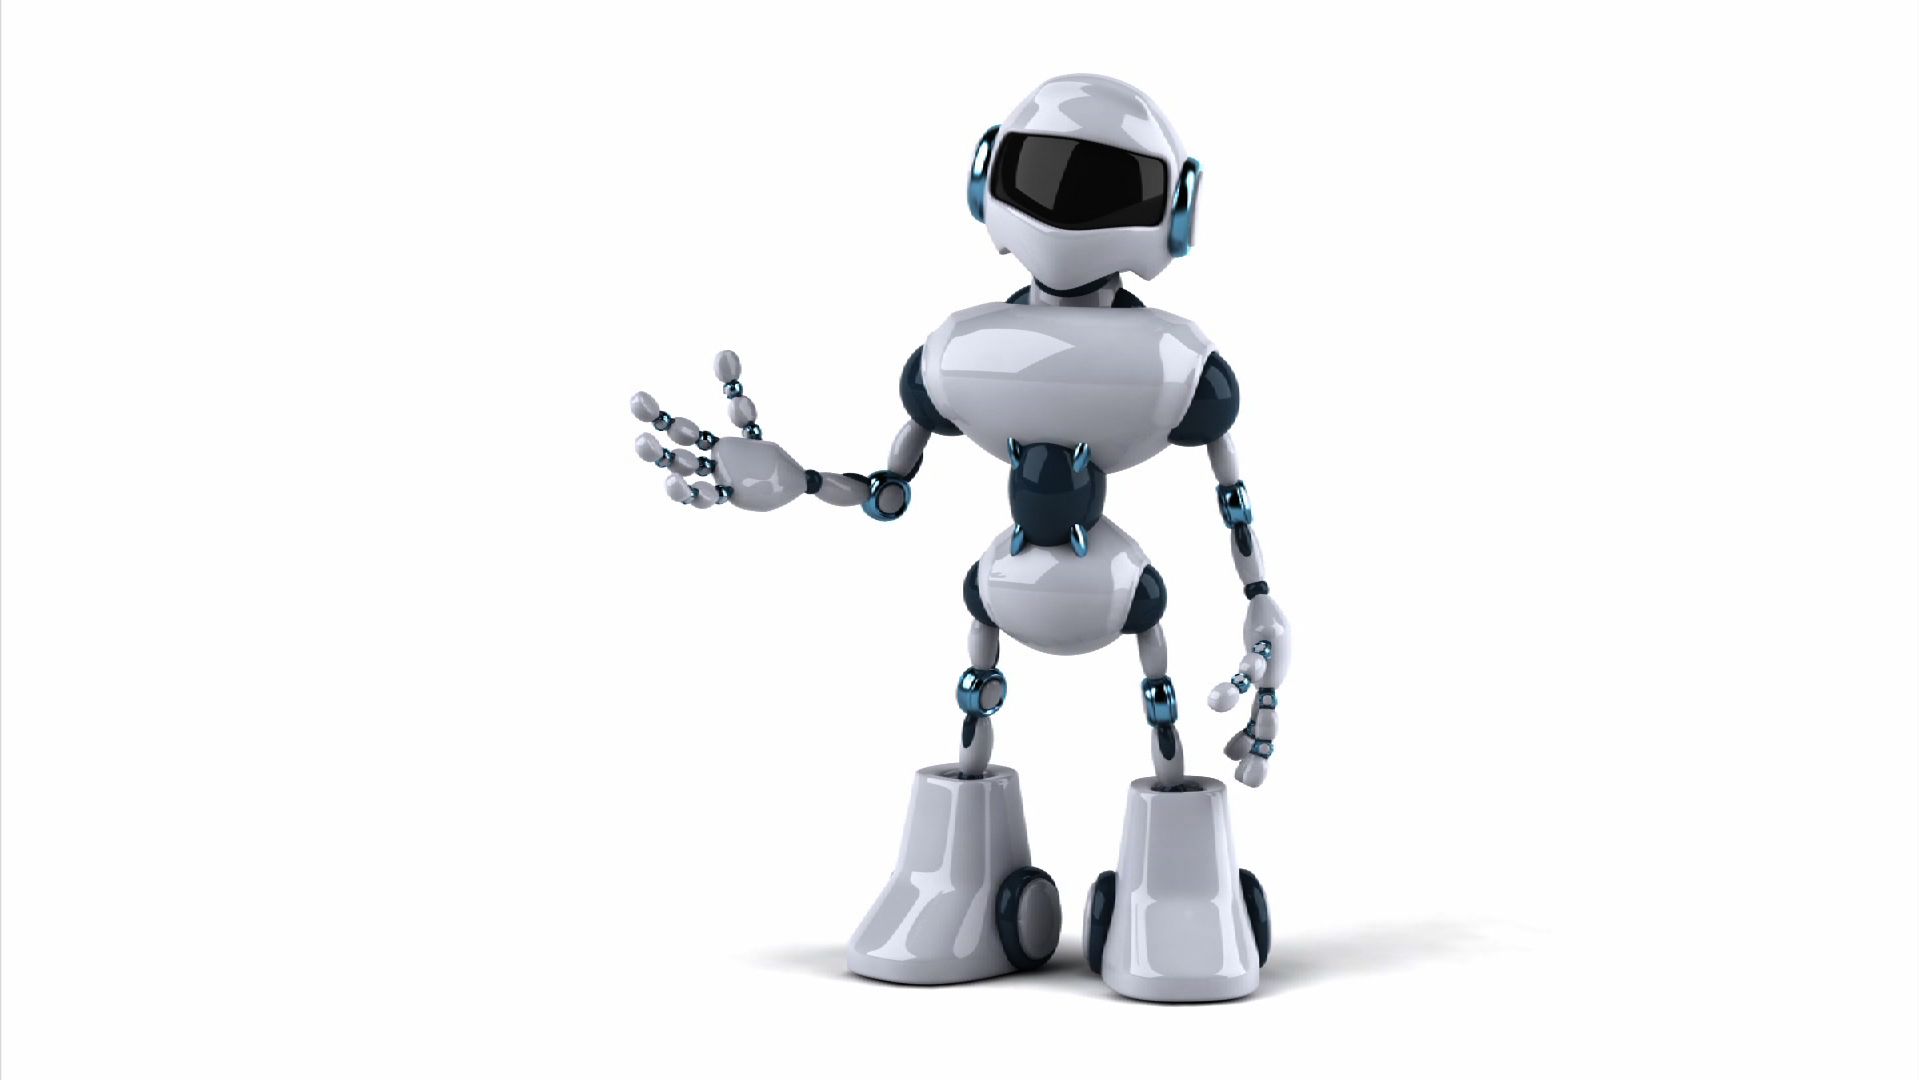 Robotics Background Wallpaper: Robots of The Future Robots Future Robot